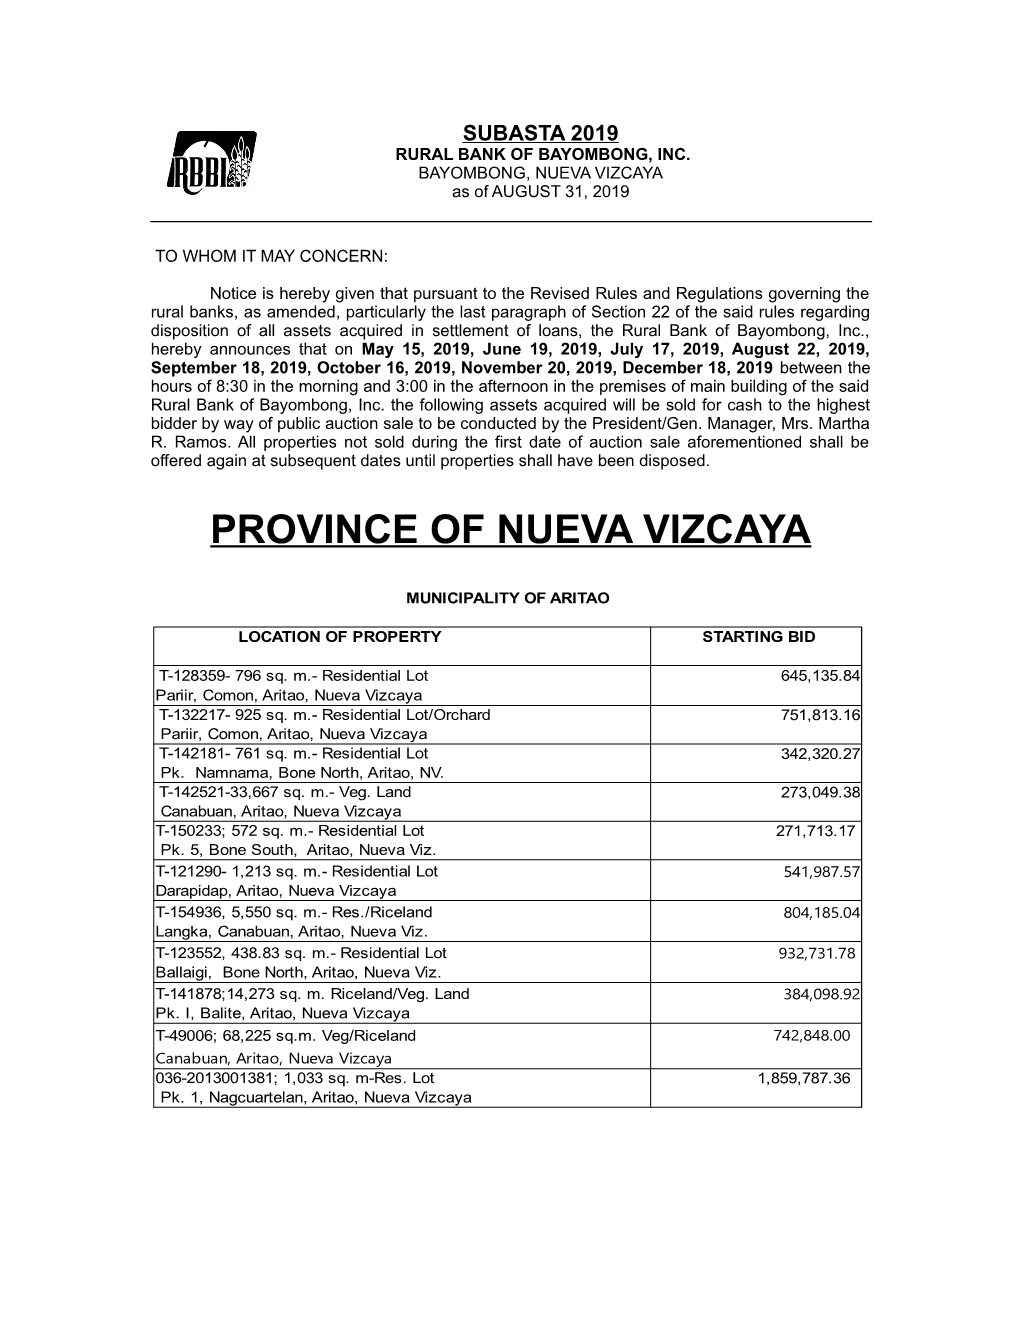 Province of Nueva Vizcaya